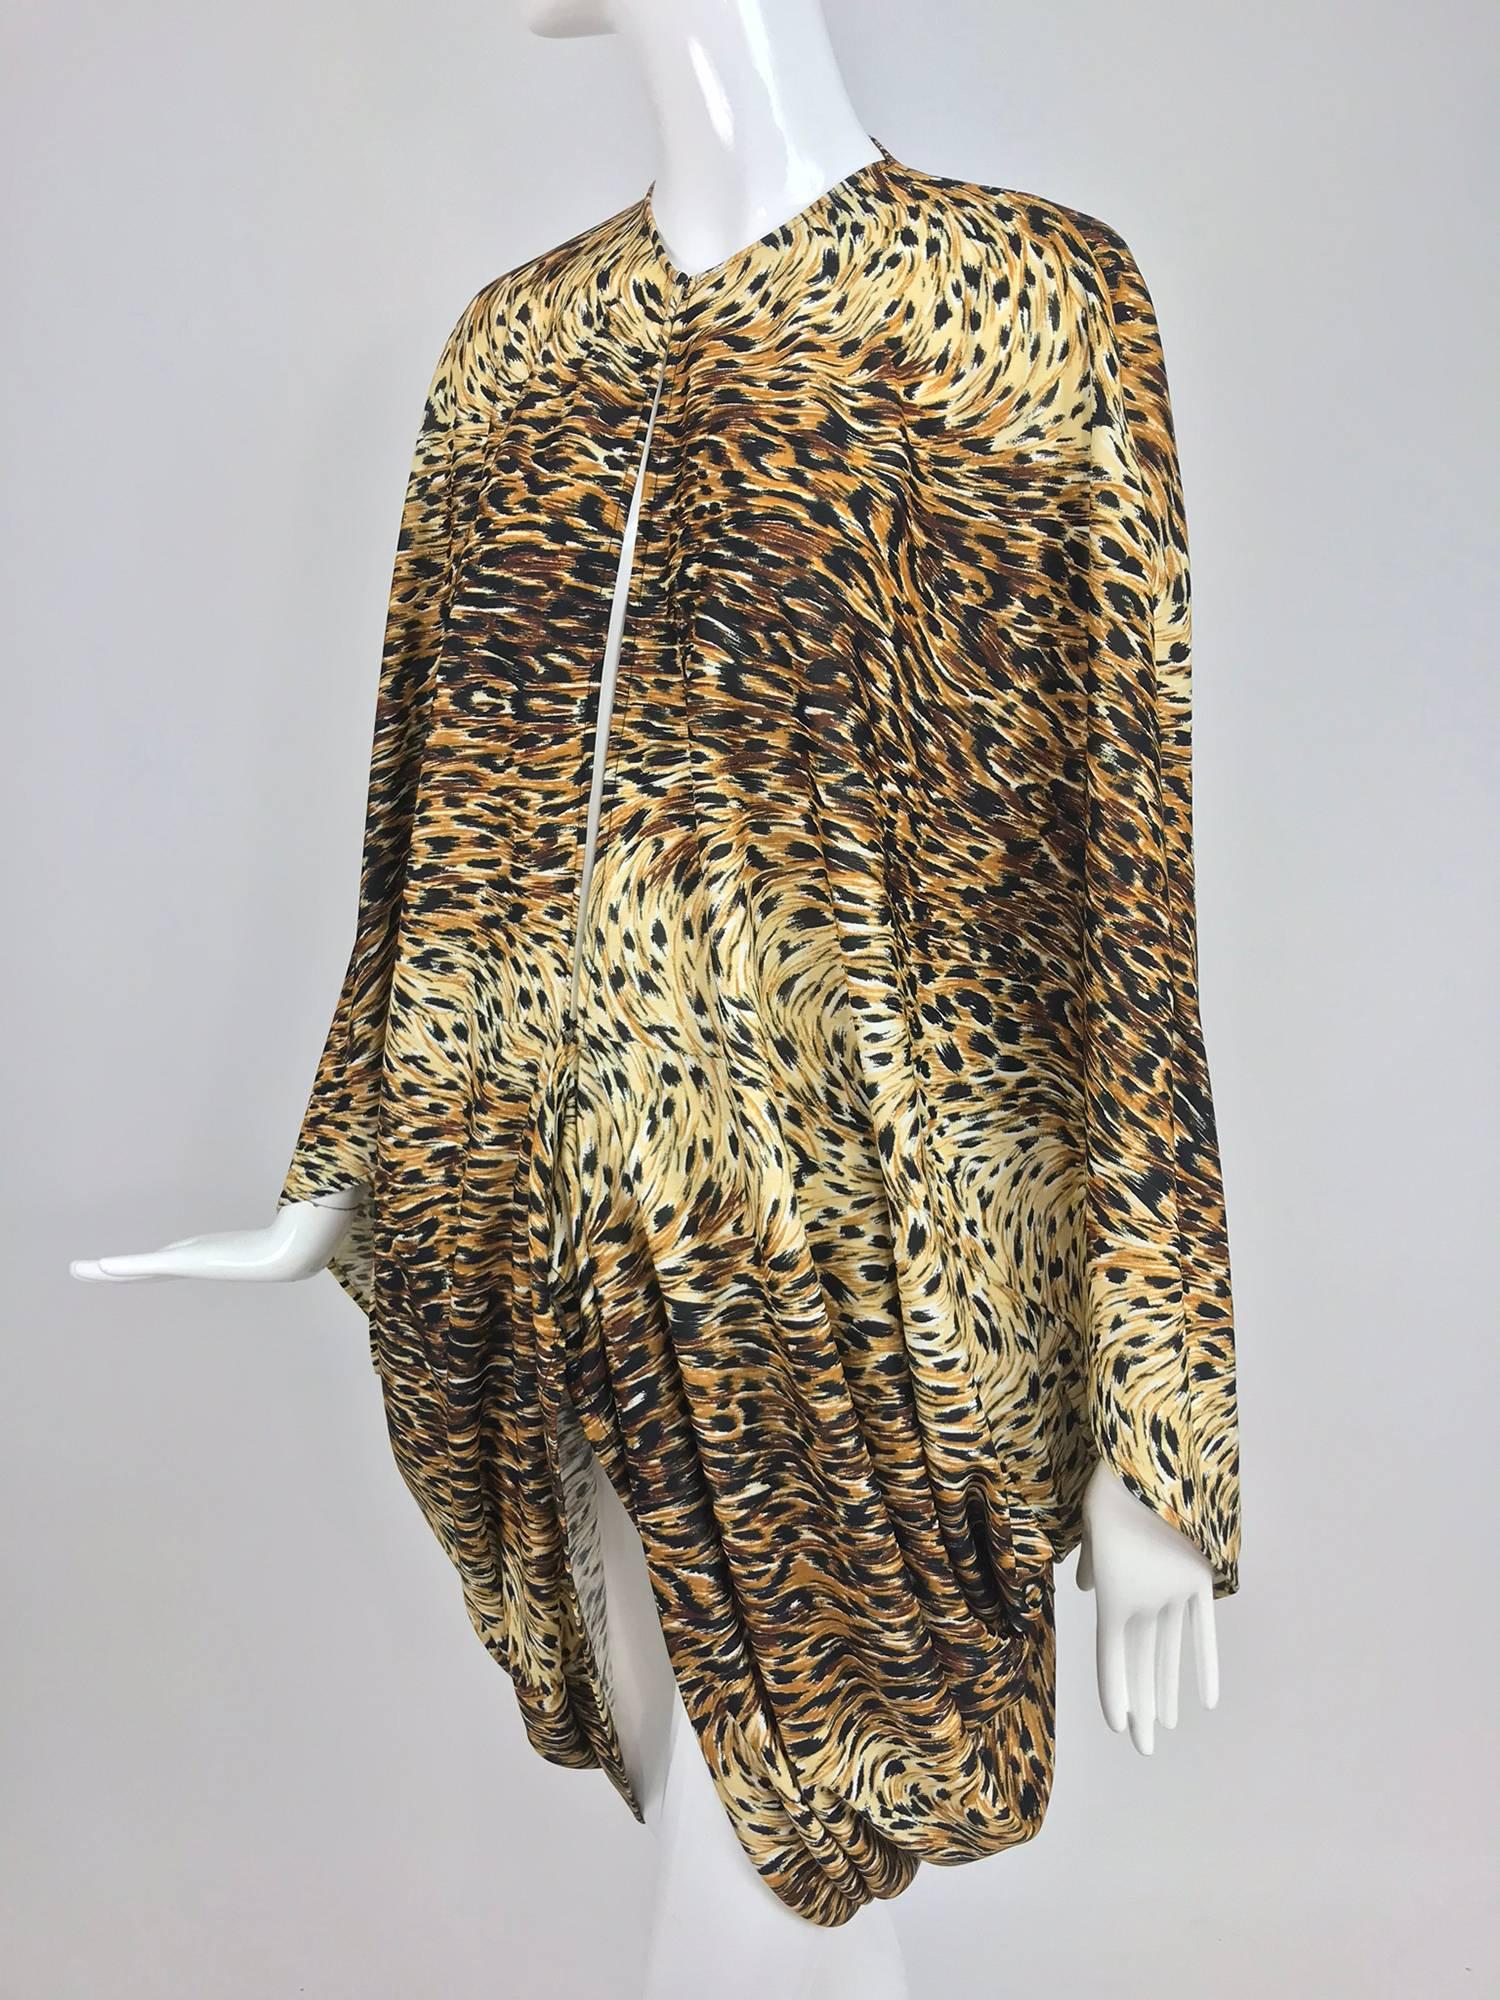 Veste cocon Norma Kamali OMO à imprimé léopard des années 1980. Veste cocon non doublée en jersey nylon/spandex se fermant sur le devant par un crochet et un œillet. Forme drapée avec ouvertures pour les bras, plus longue dans le dos. Convient à une